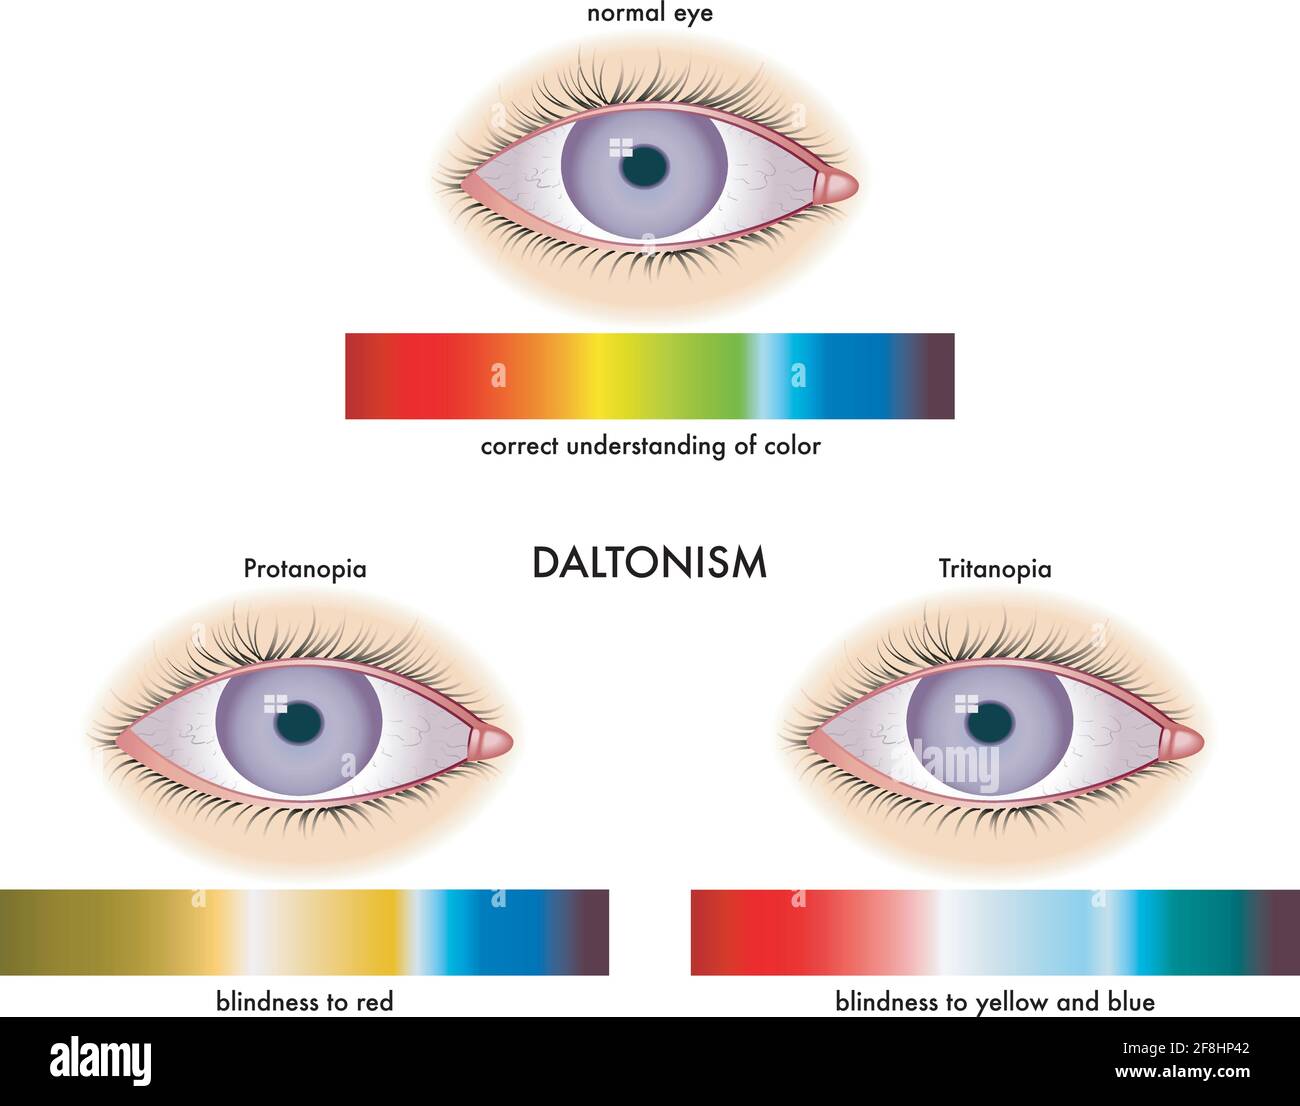 Illustrazione medica dei sintomi del daltonismo, con annotazioni. Illustrazione Vettoriale